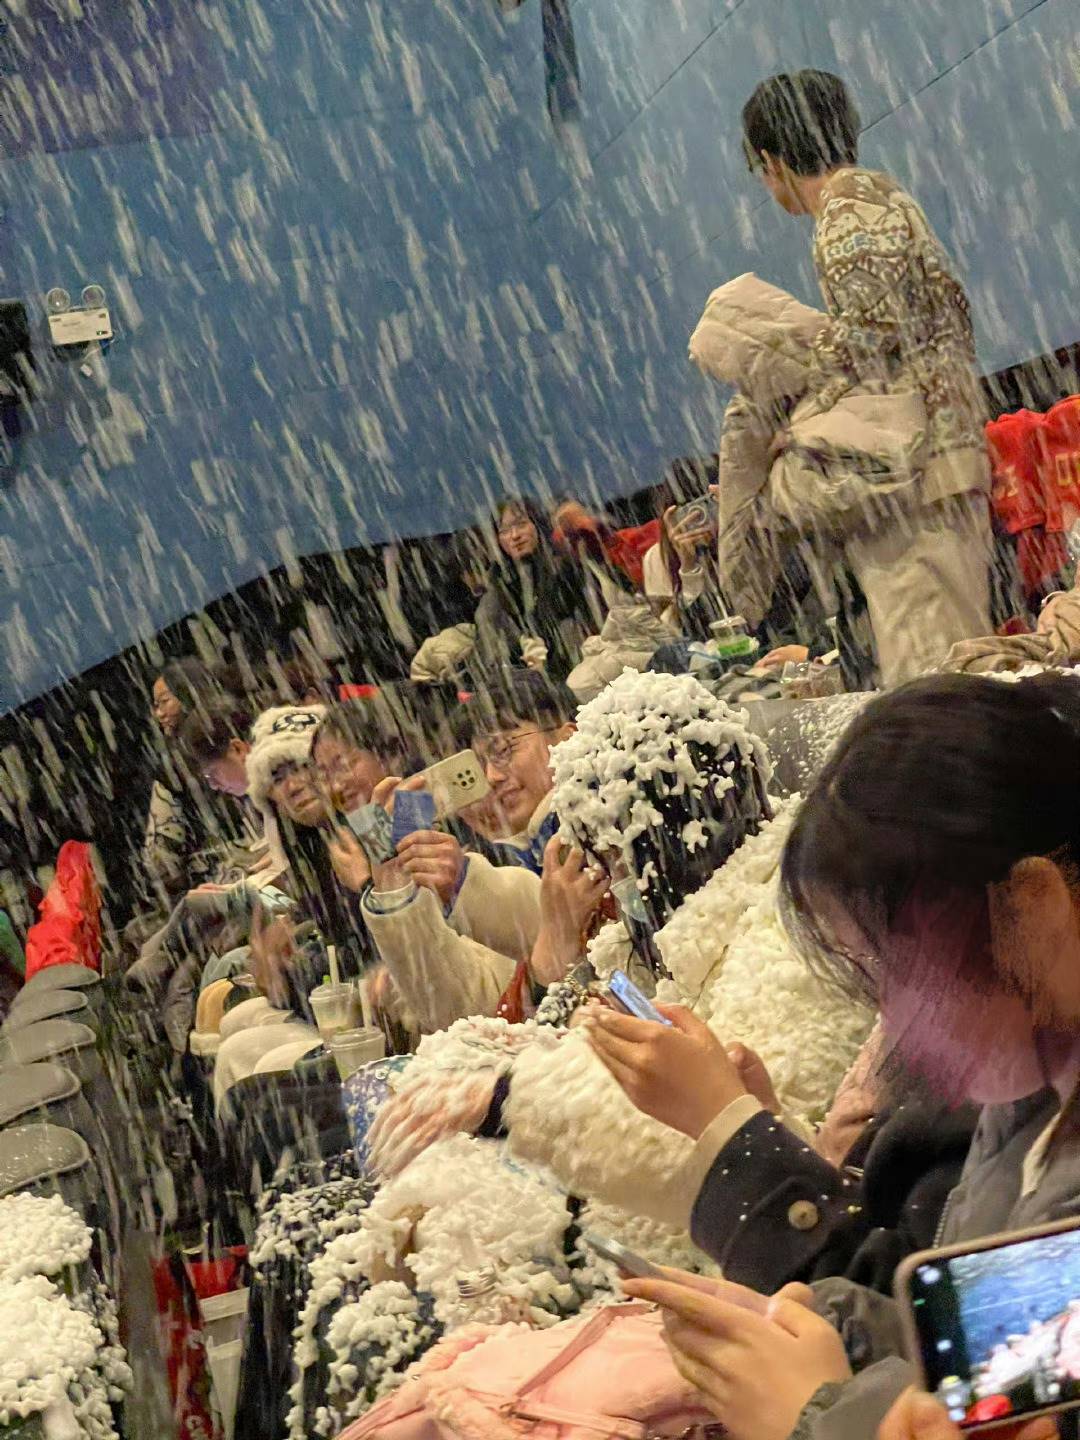 中國元旦檔期上映的電影《一閃一閃亮晶晶》為了吸引民眾進場，推出特別的「下雪場」，在影院中配合電影橋段發出雪花，讓觀眾感同身受。但每個影院製造雪花的方式不一，有些影院甚至因為施放不當造成「雪崩」，引起網友們討論。